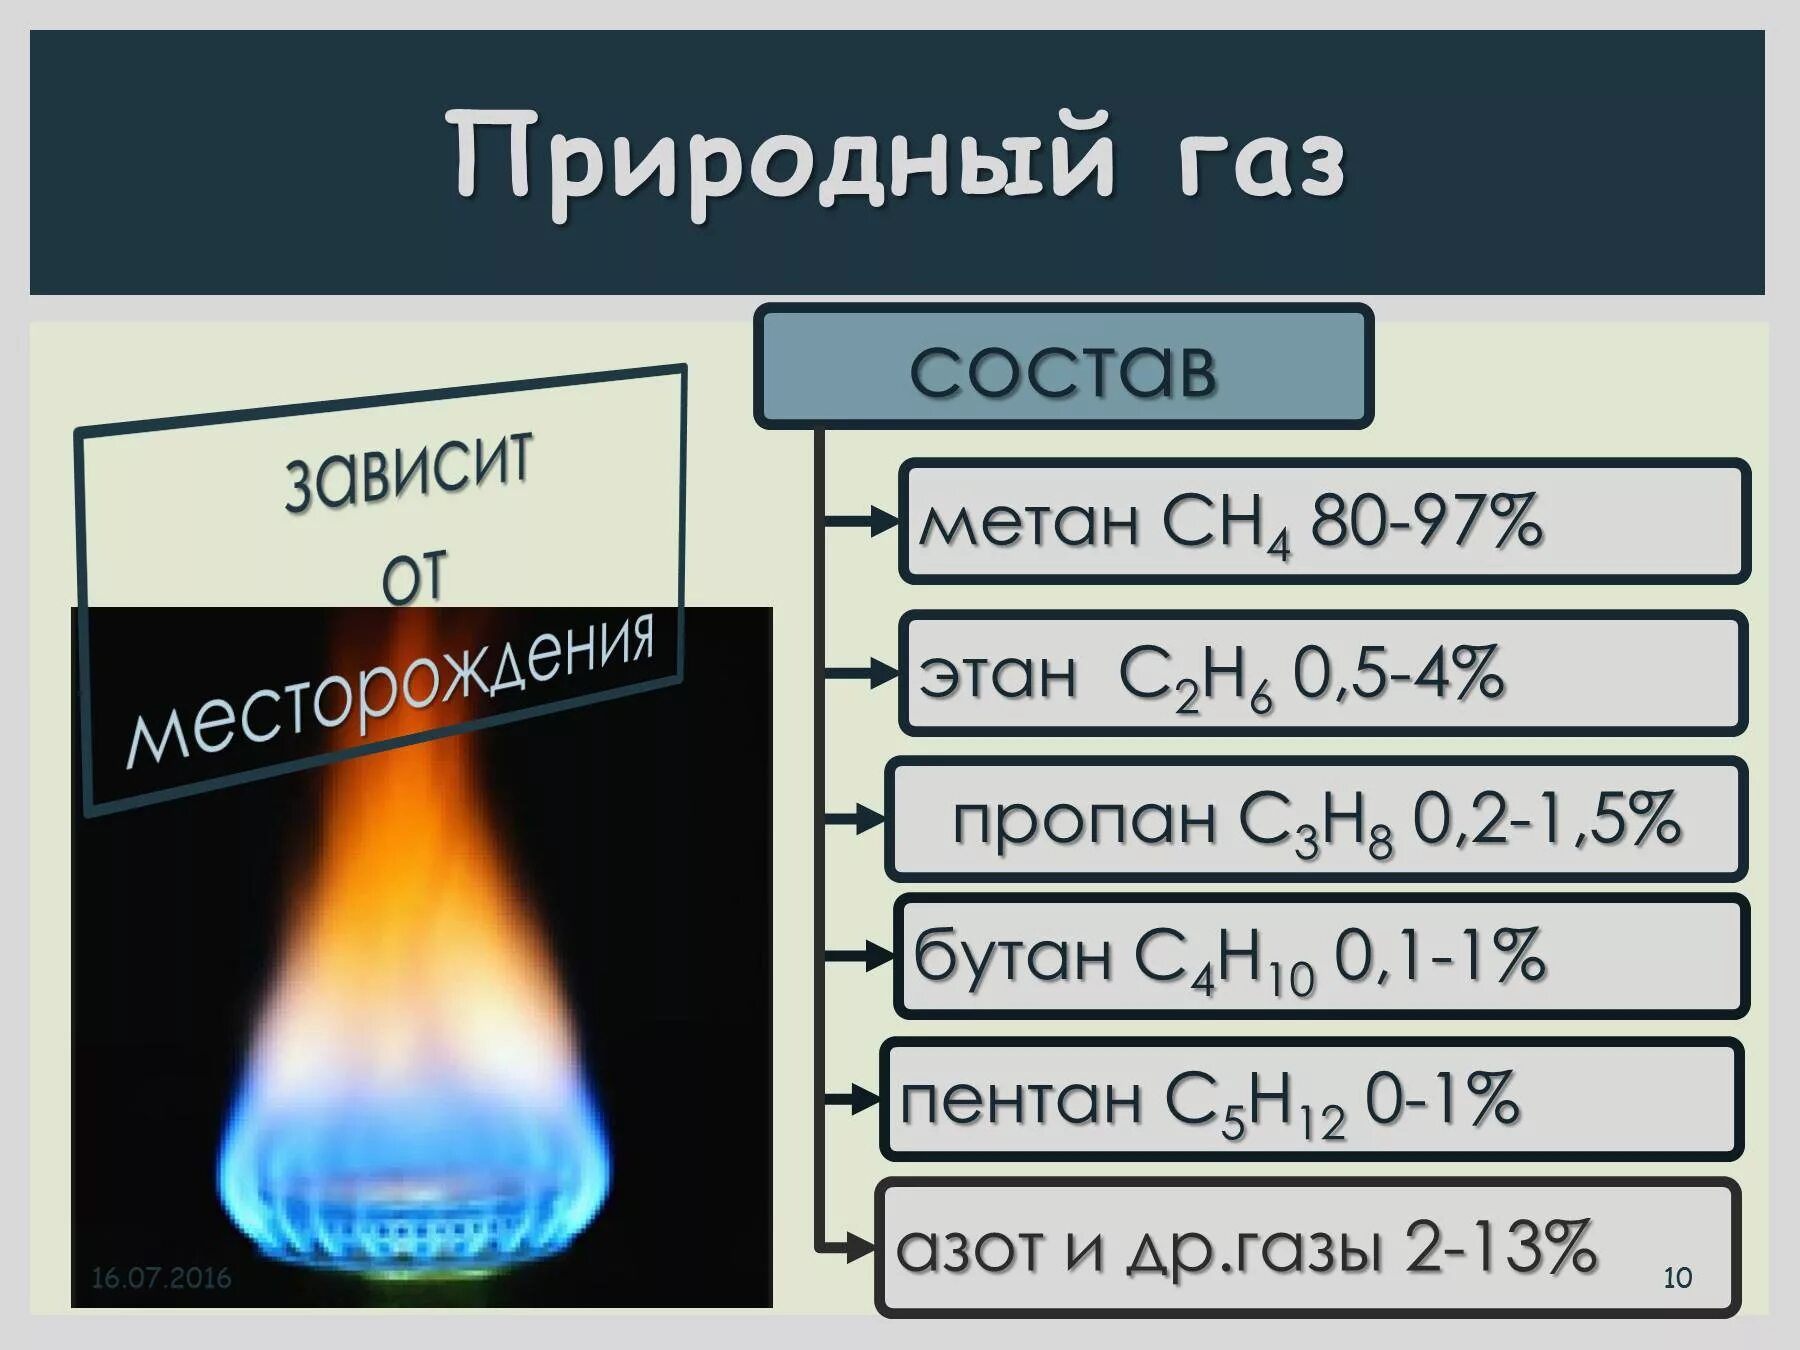 Тесты природный газ. Состав смеси природного газа. Природный ГАЗ состав. Состав природного газа метан. Из чего состоит природный ГАЗ.